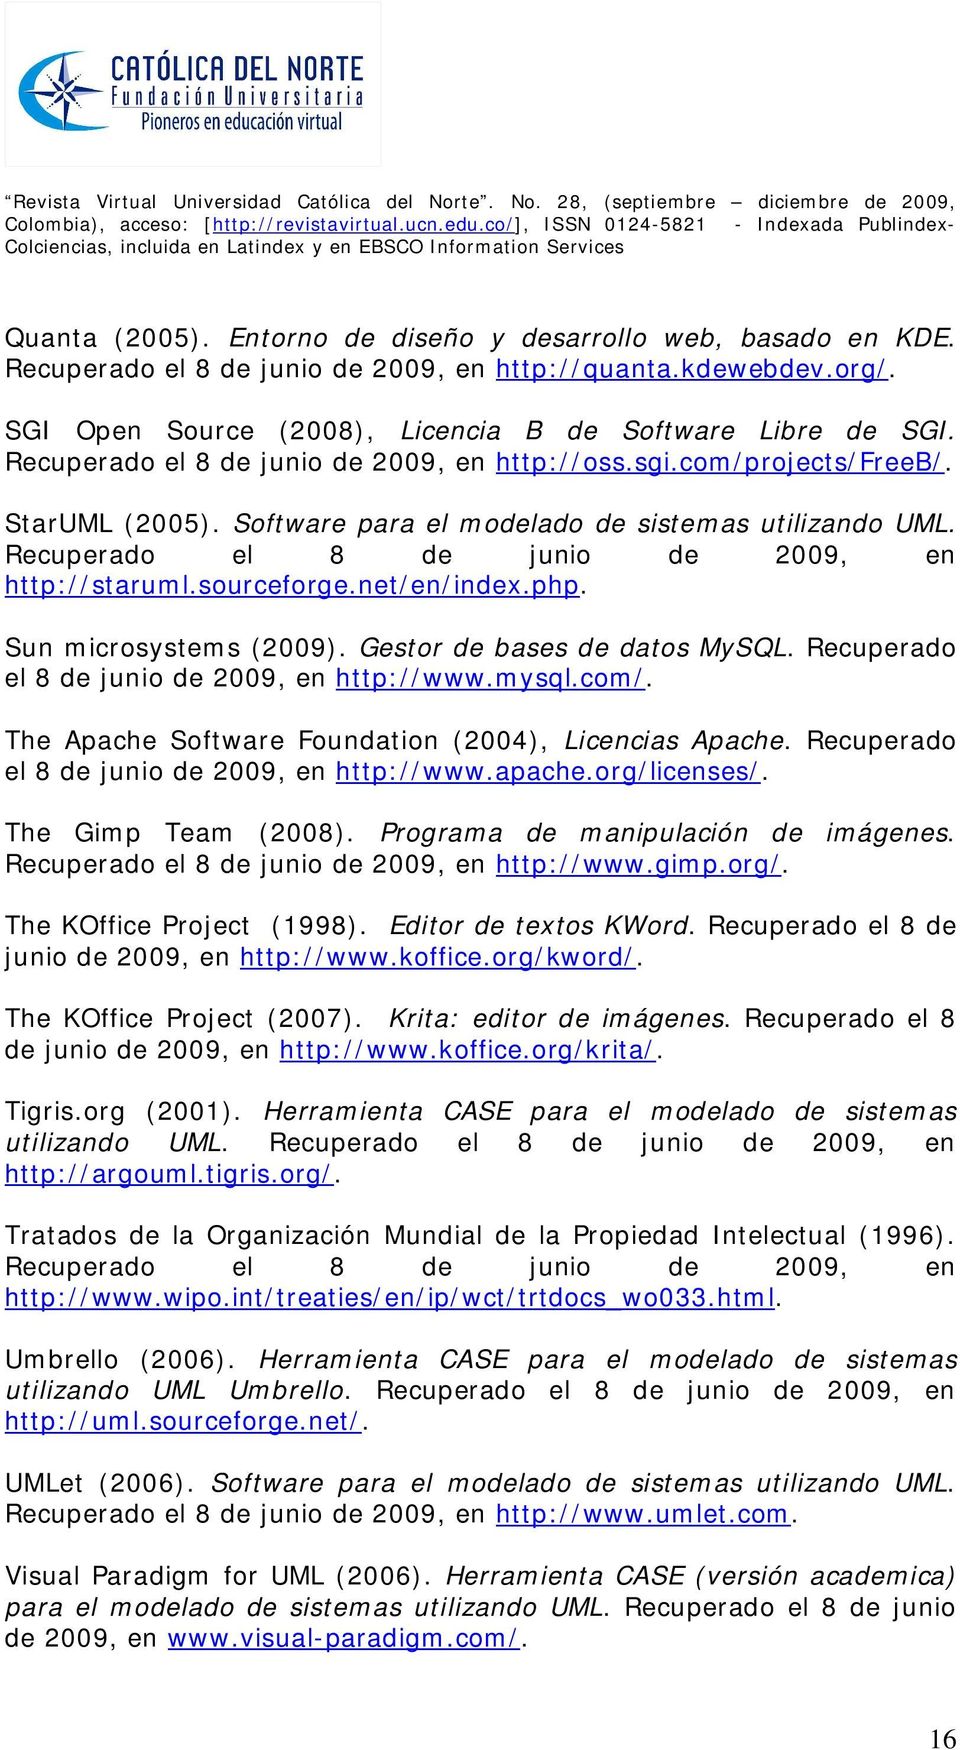 sourceforge.net/en/index.php. Sun microsystems (2009). Gestor de bases de datos MySQL. Recuperado el 8 de junio de 2009, en http://www.mysql.com/.